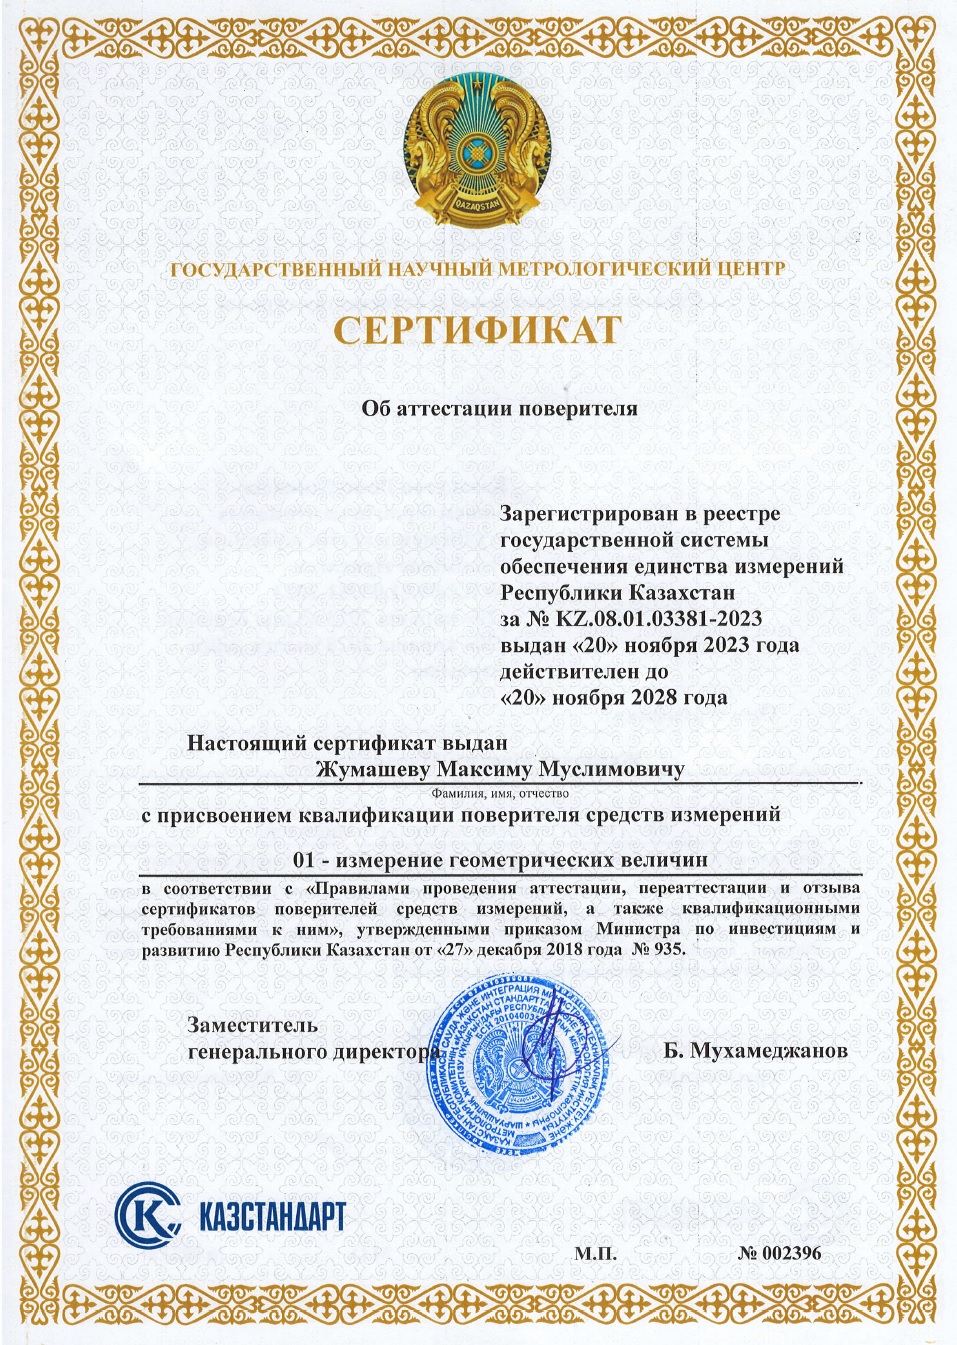 Сертификат поверителя измерении геометрических величин. №002396. Жумашев М.М.